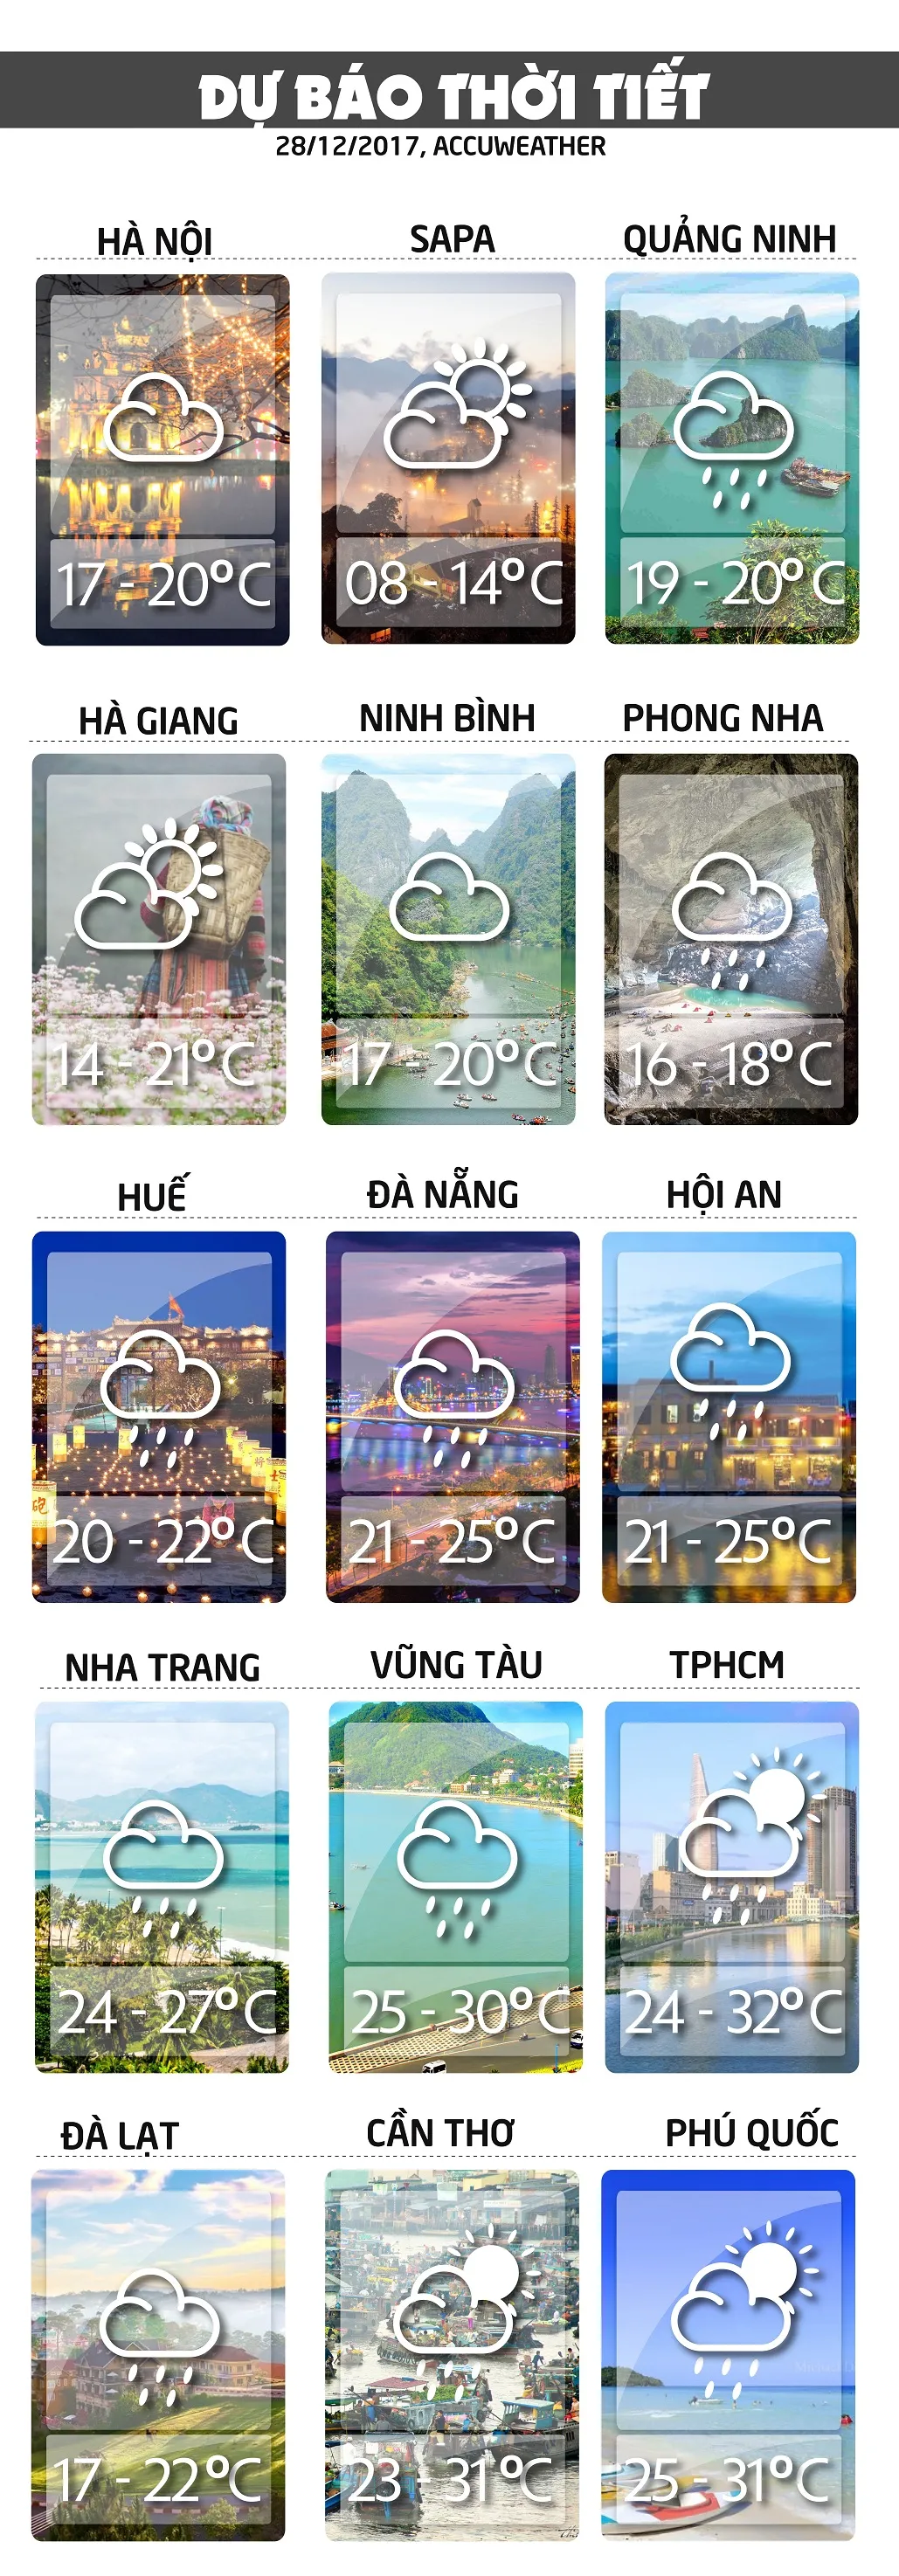 Dự báo thời tiết ngày mai 28/12: Bắc và Trung Bộ có mưa voh.com.vn